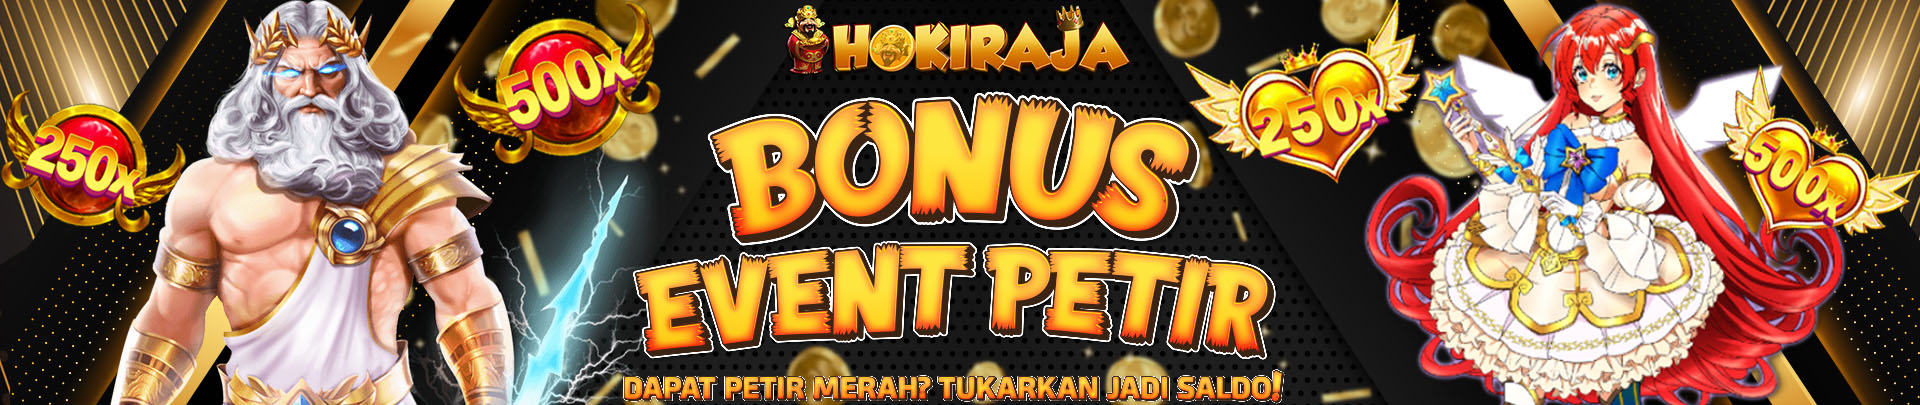 EVENT BONUS PETIR HOKIRAJA